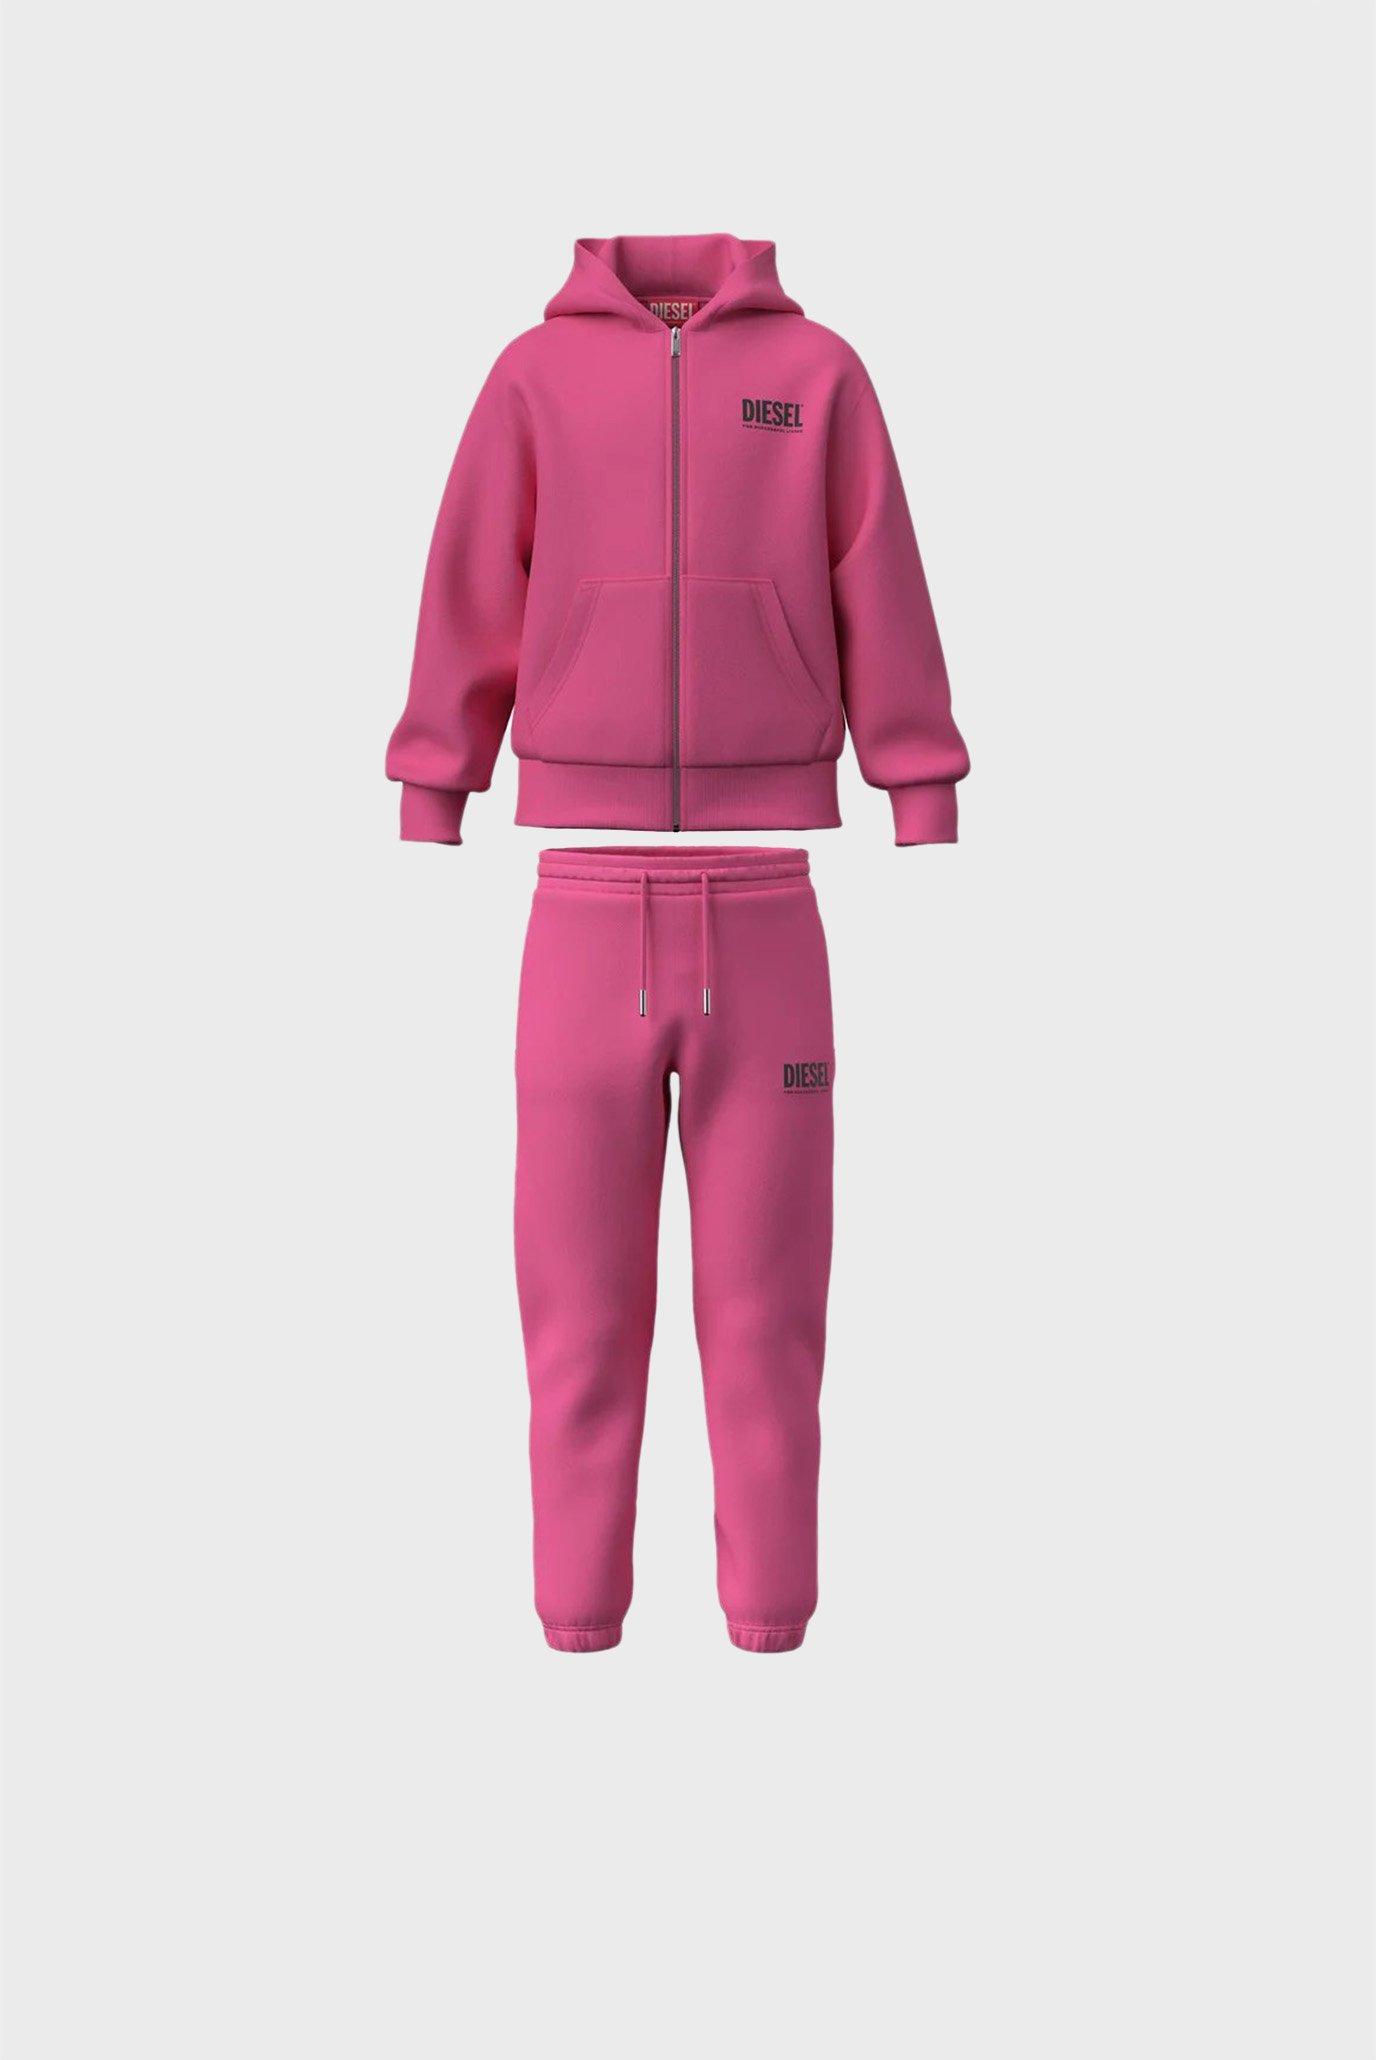 Дитячий рожевий спортивний костюм (худі, штани) LSTEPPIU DI OVER-SET 1